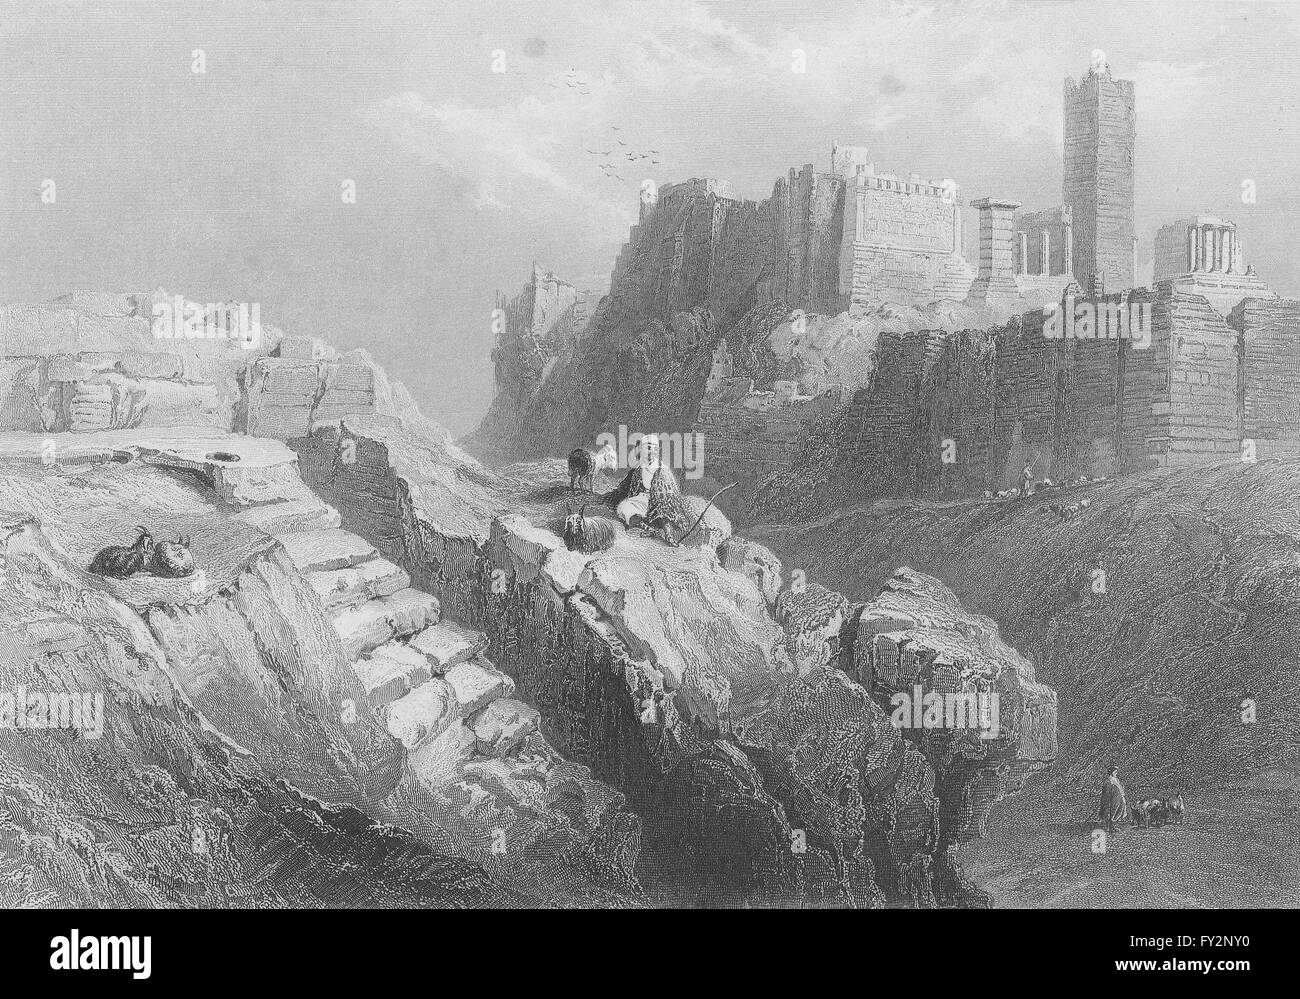 Grecia: Mars Hill, en Athens-Bartlett, grabado antiguo 1847 Foto de stock